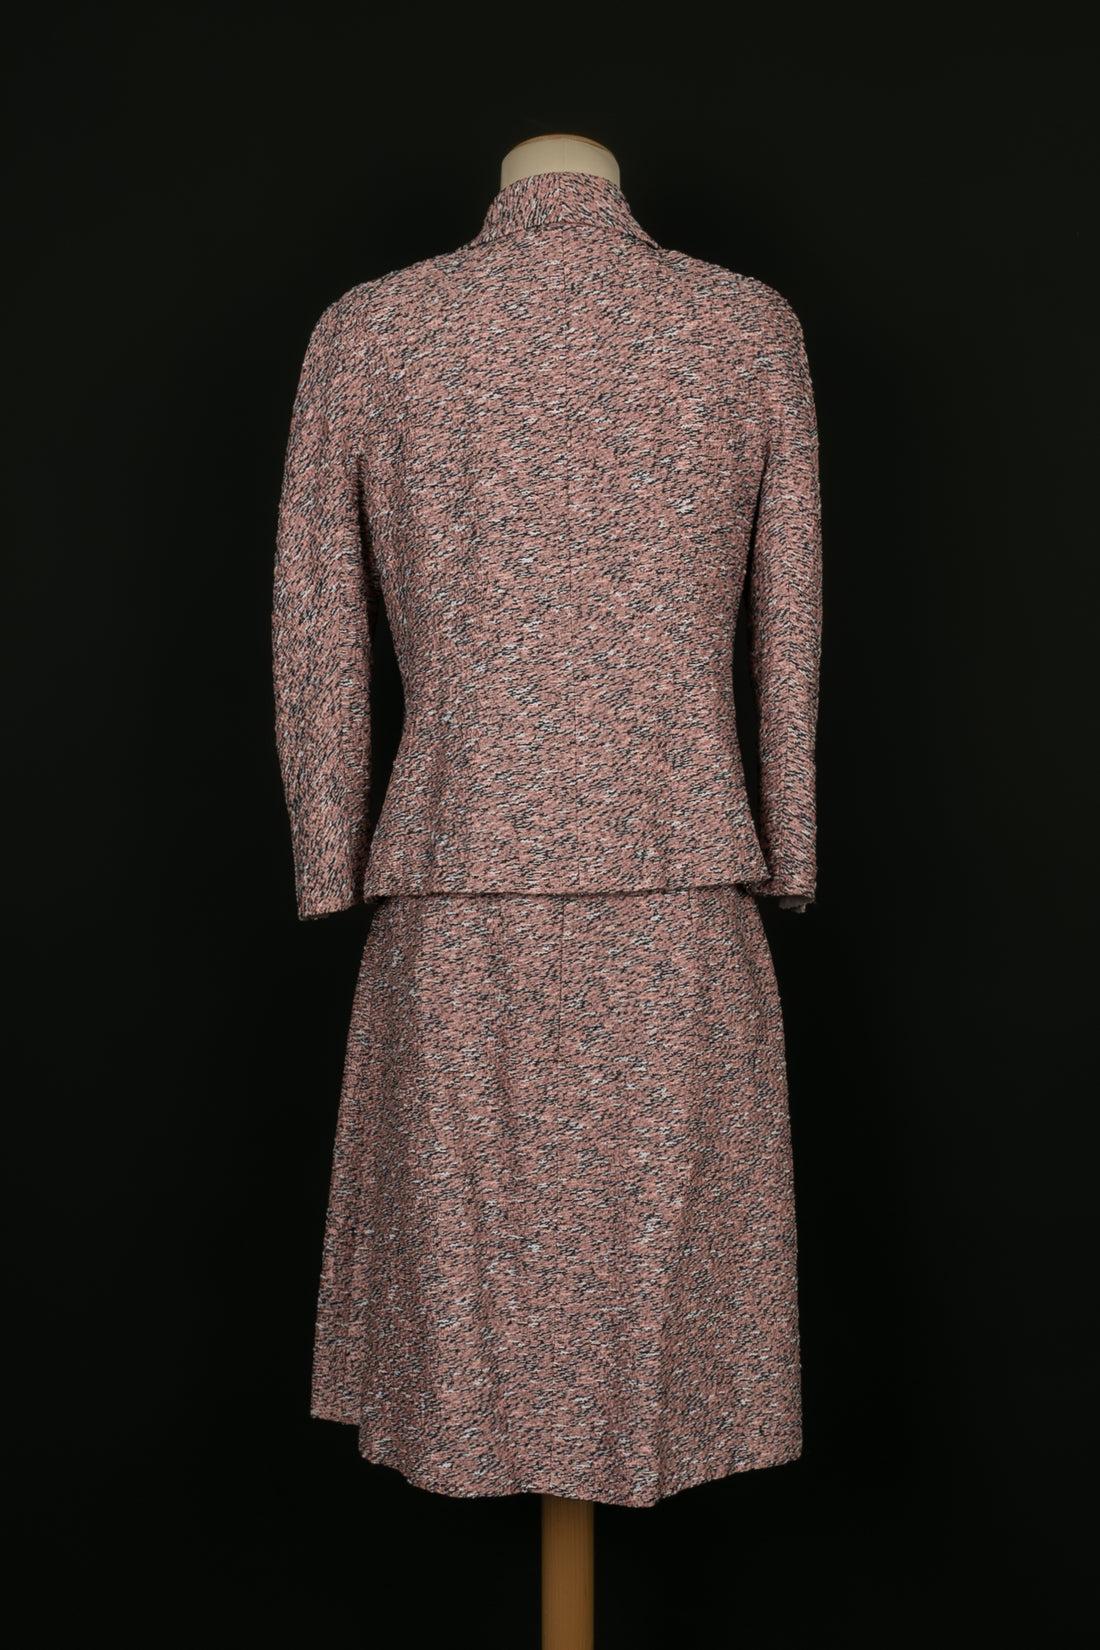 Chanel - (Made in France) Ensemble composé d'une veste et d'une jupe en tweed dans les tons de rose. Taille 44FR.

Informations complémentaires : 
Dimensions : Veste : Largeur des épaules : 44 cm, Poitrine : 45 cm, Longueur des manches : 50 cm,